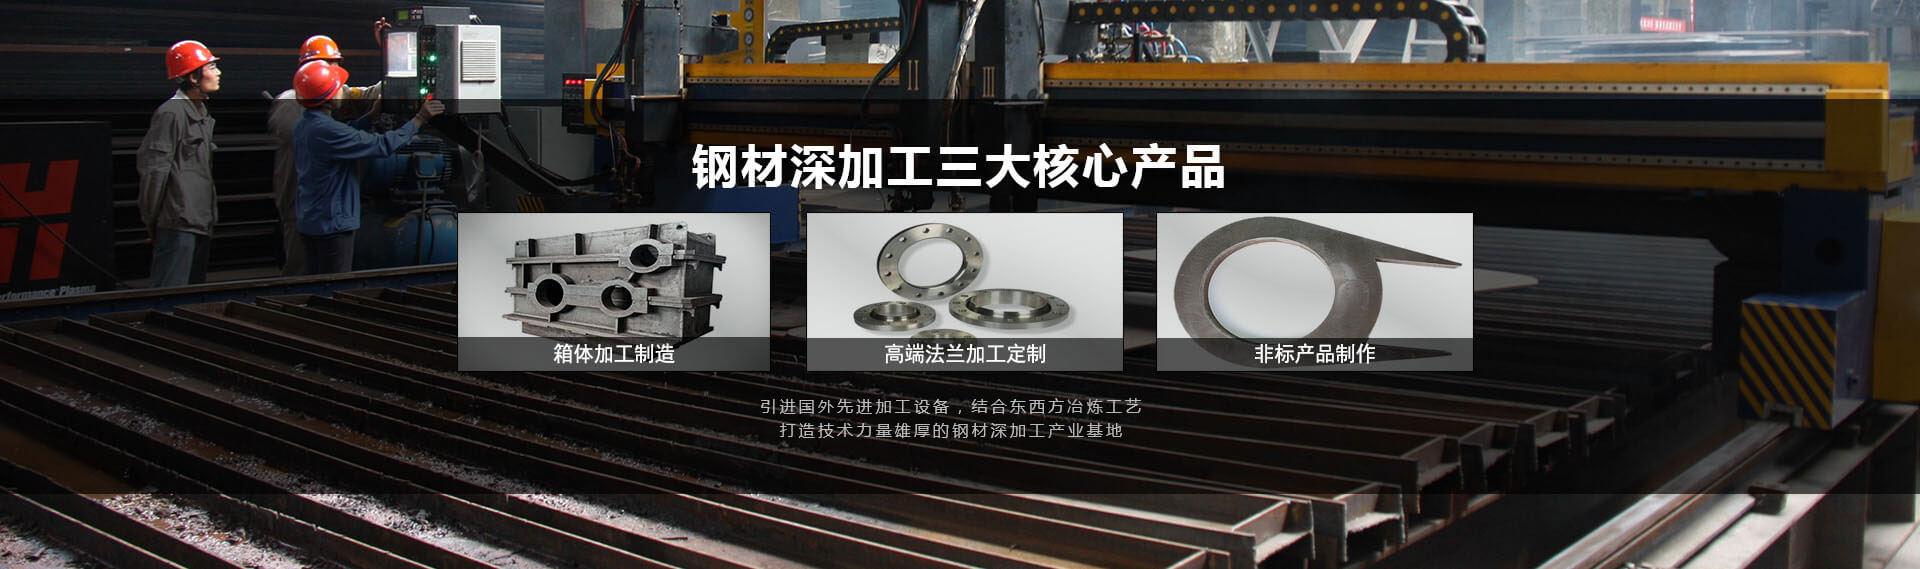 钢材加工中国冶金行业知名品牌